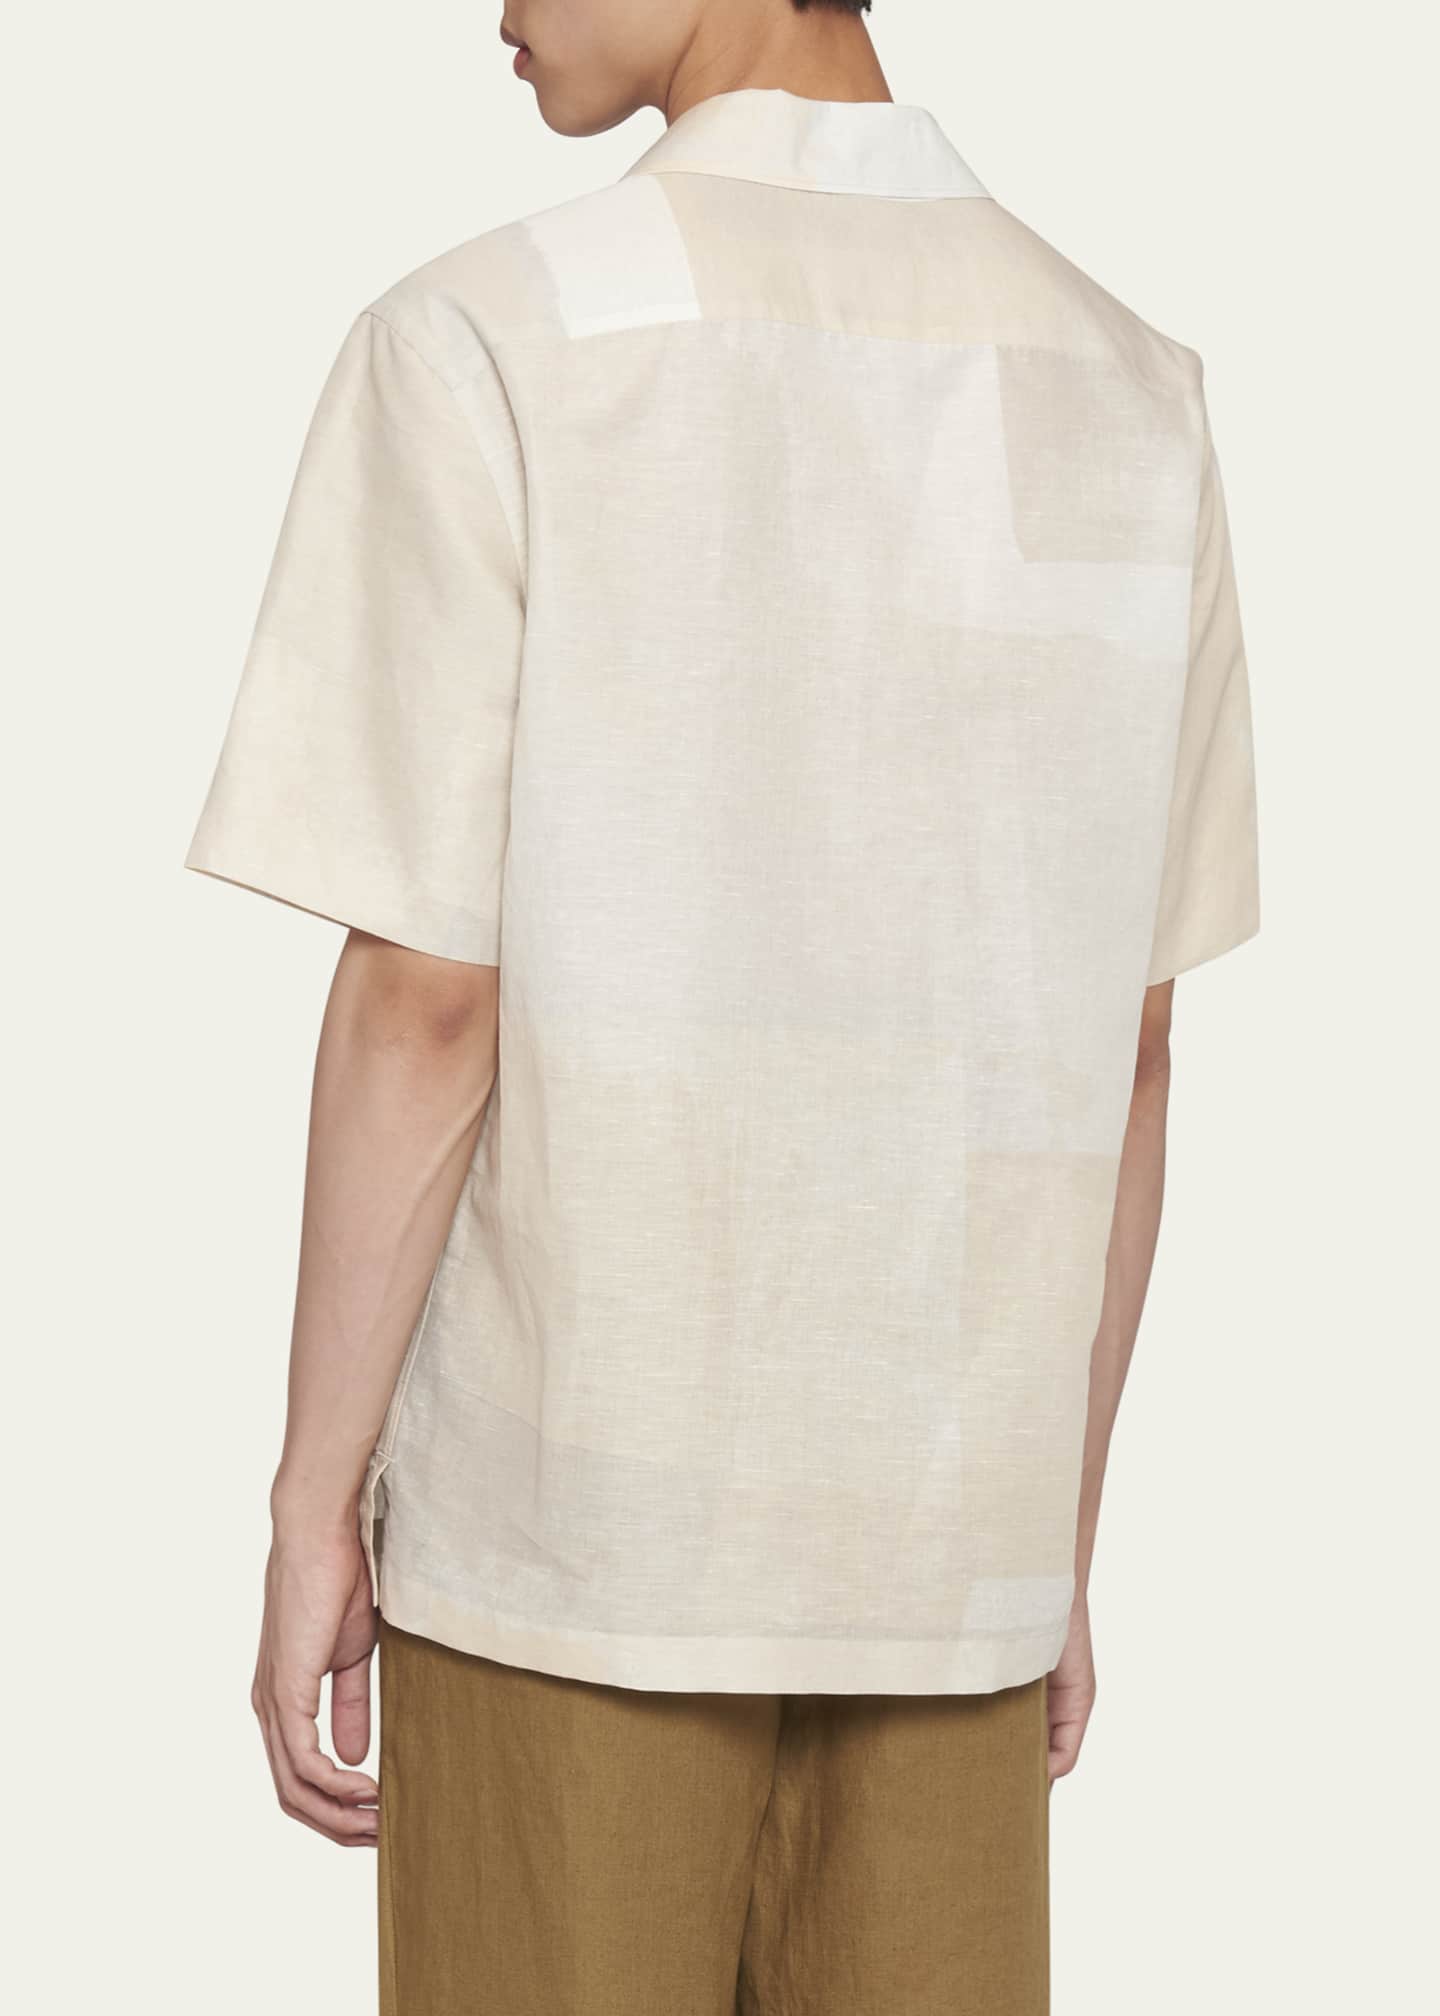 ZEGNA Men's Linen-Cotton Camp Shirt - Bergdorf Goodman